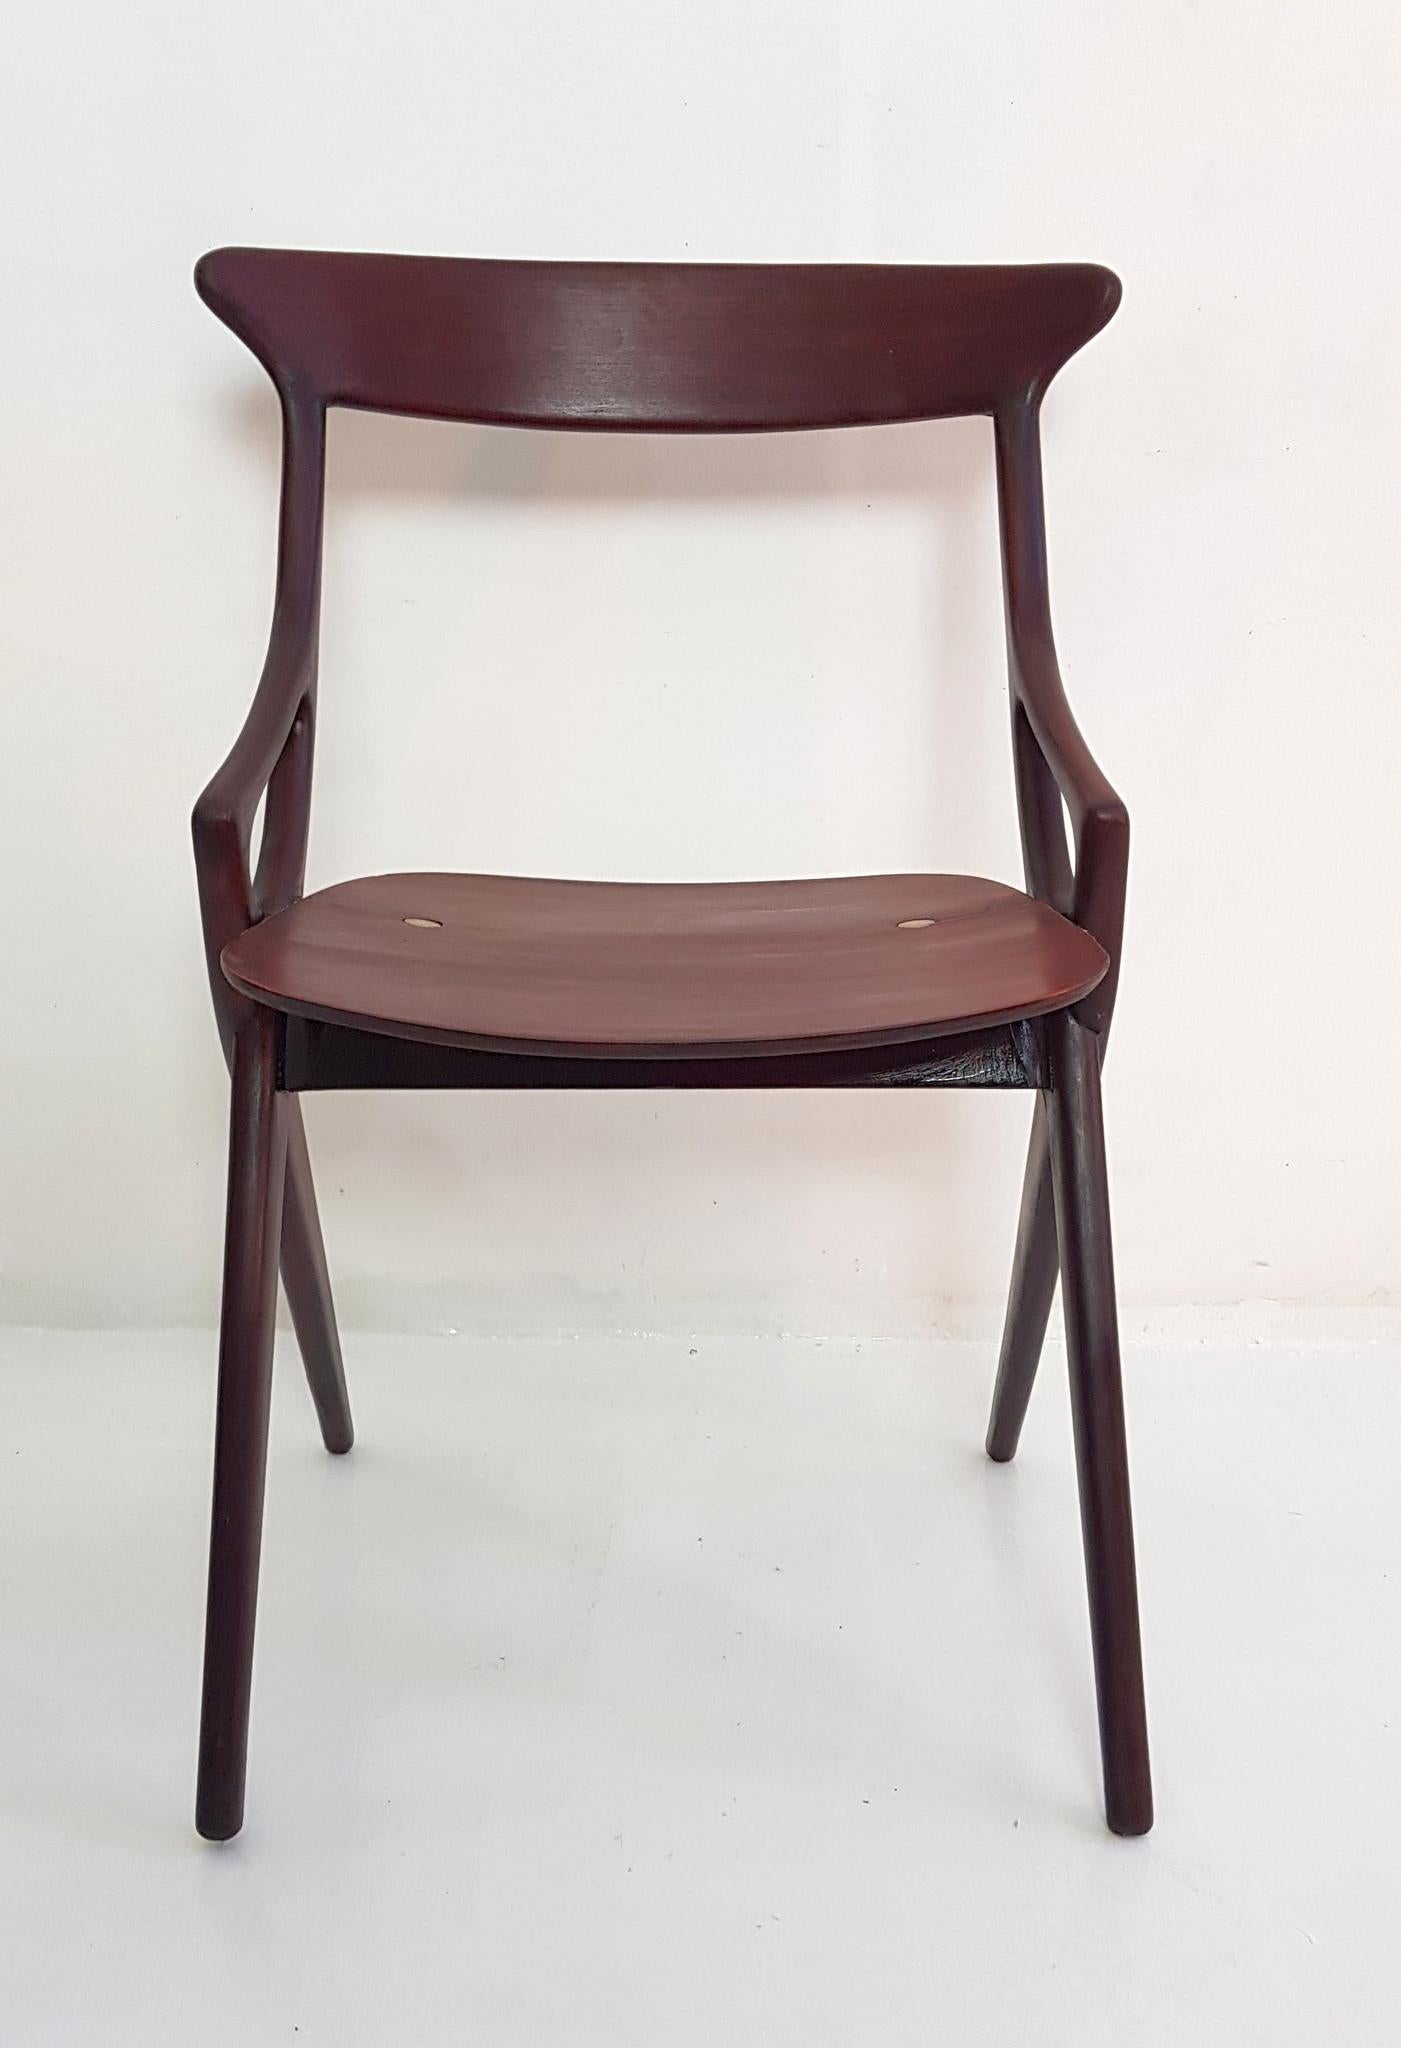 20th Century Set of 4 Dining Chairs by Arne Hovmand Olsen for Mogens Kold, Denmark, 1959 For Sale